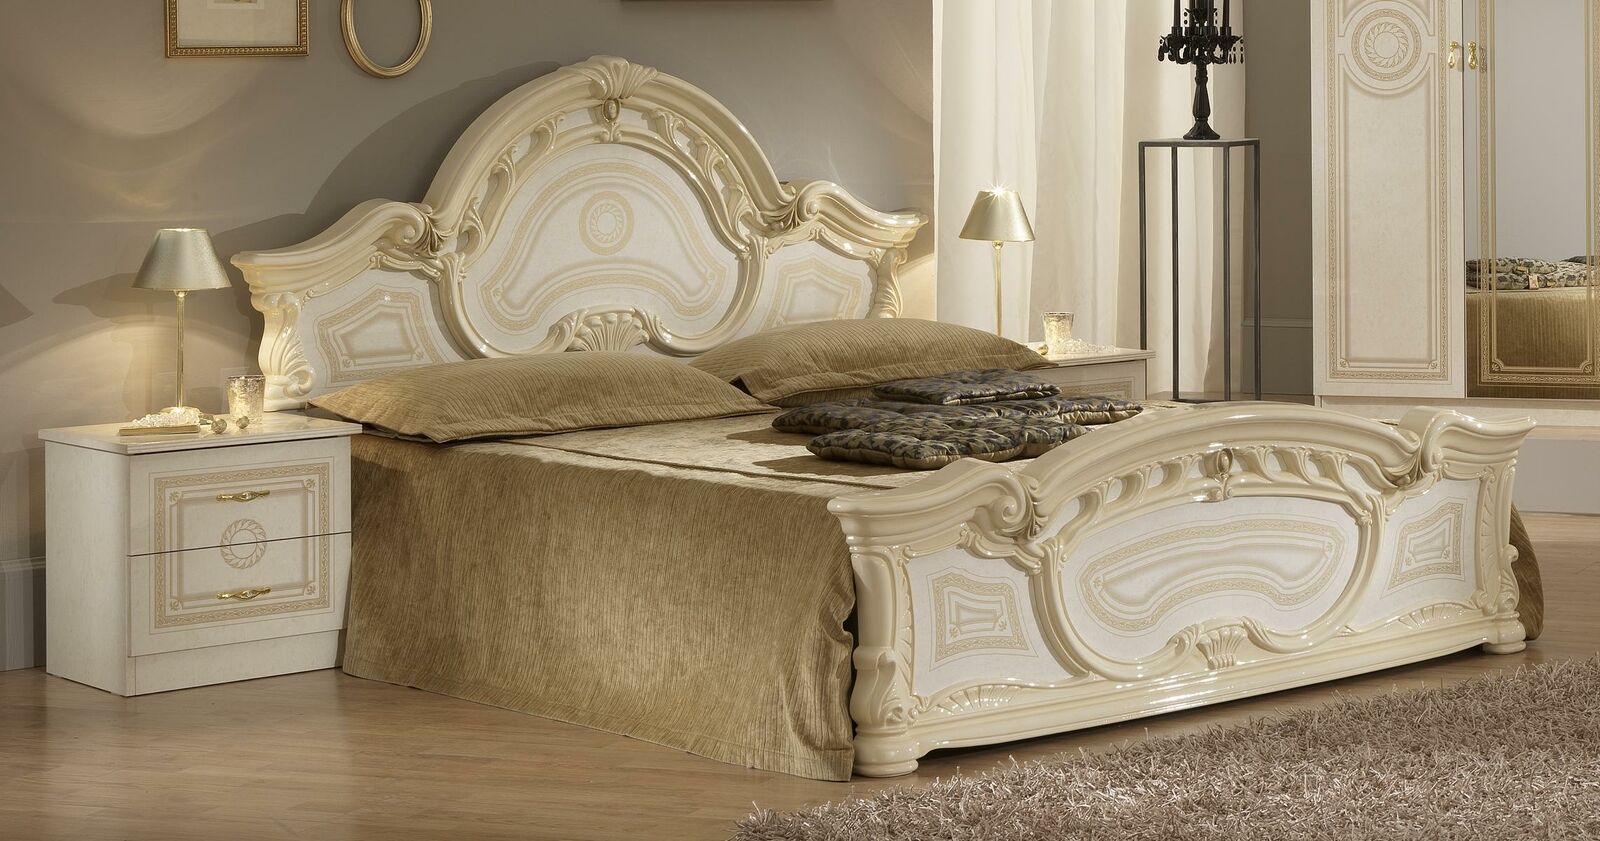 Hochwertiges Luxus Bett Polster Betten Design Doppel Holz Ehe 160x200cm Neu